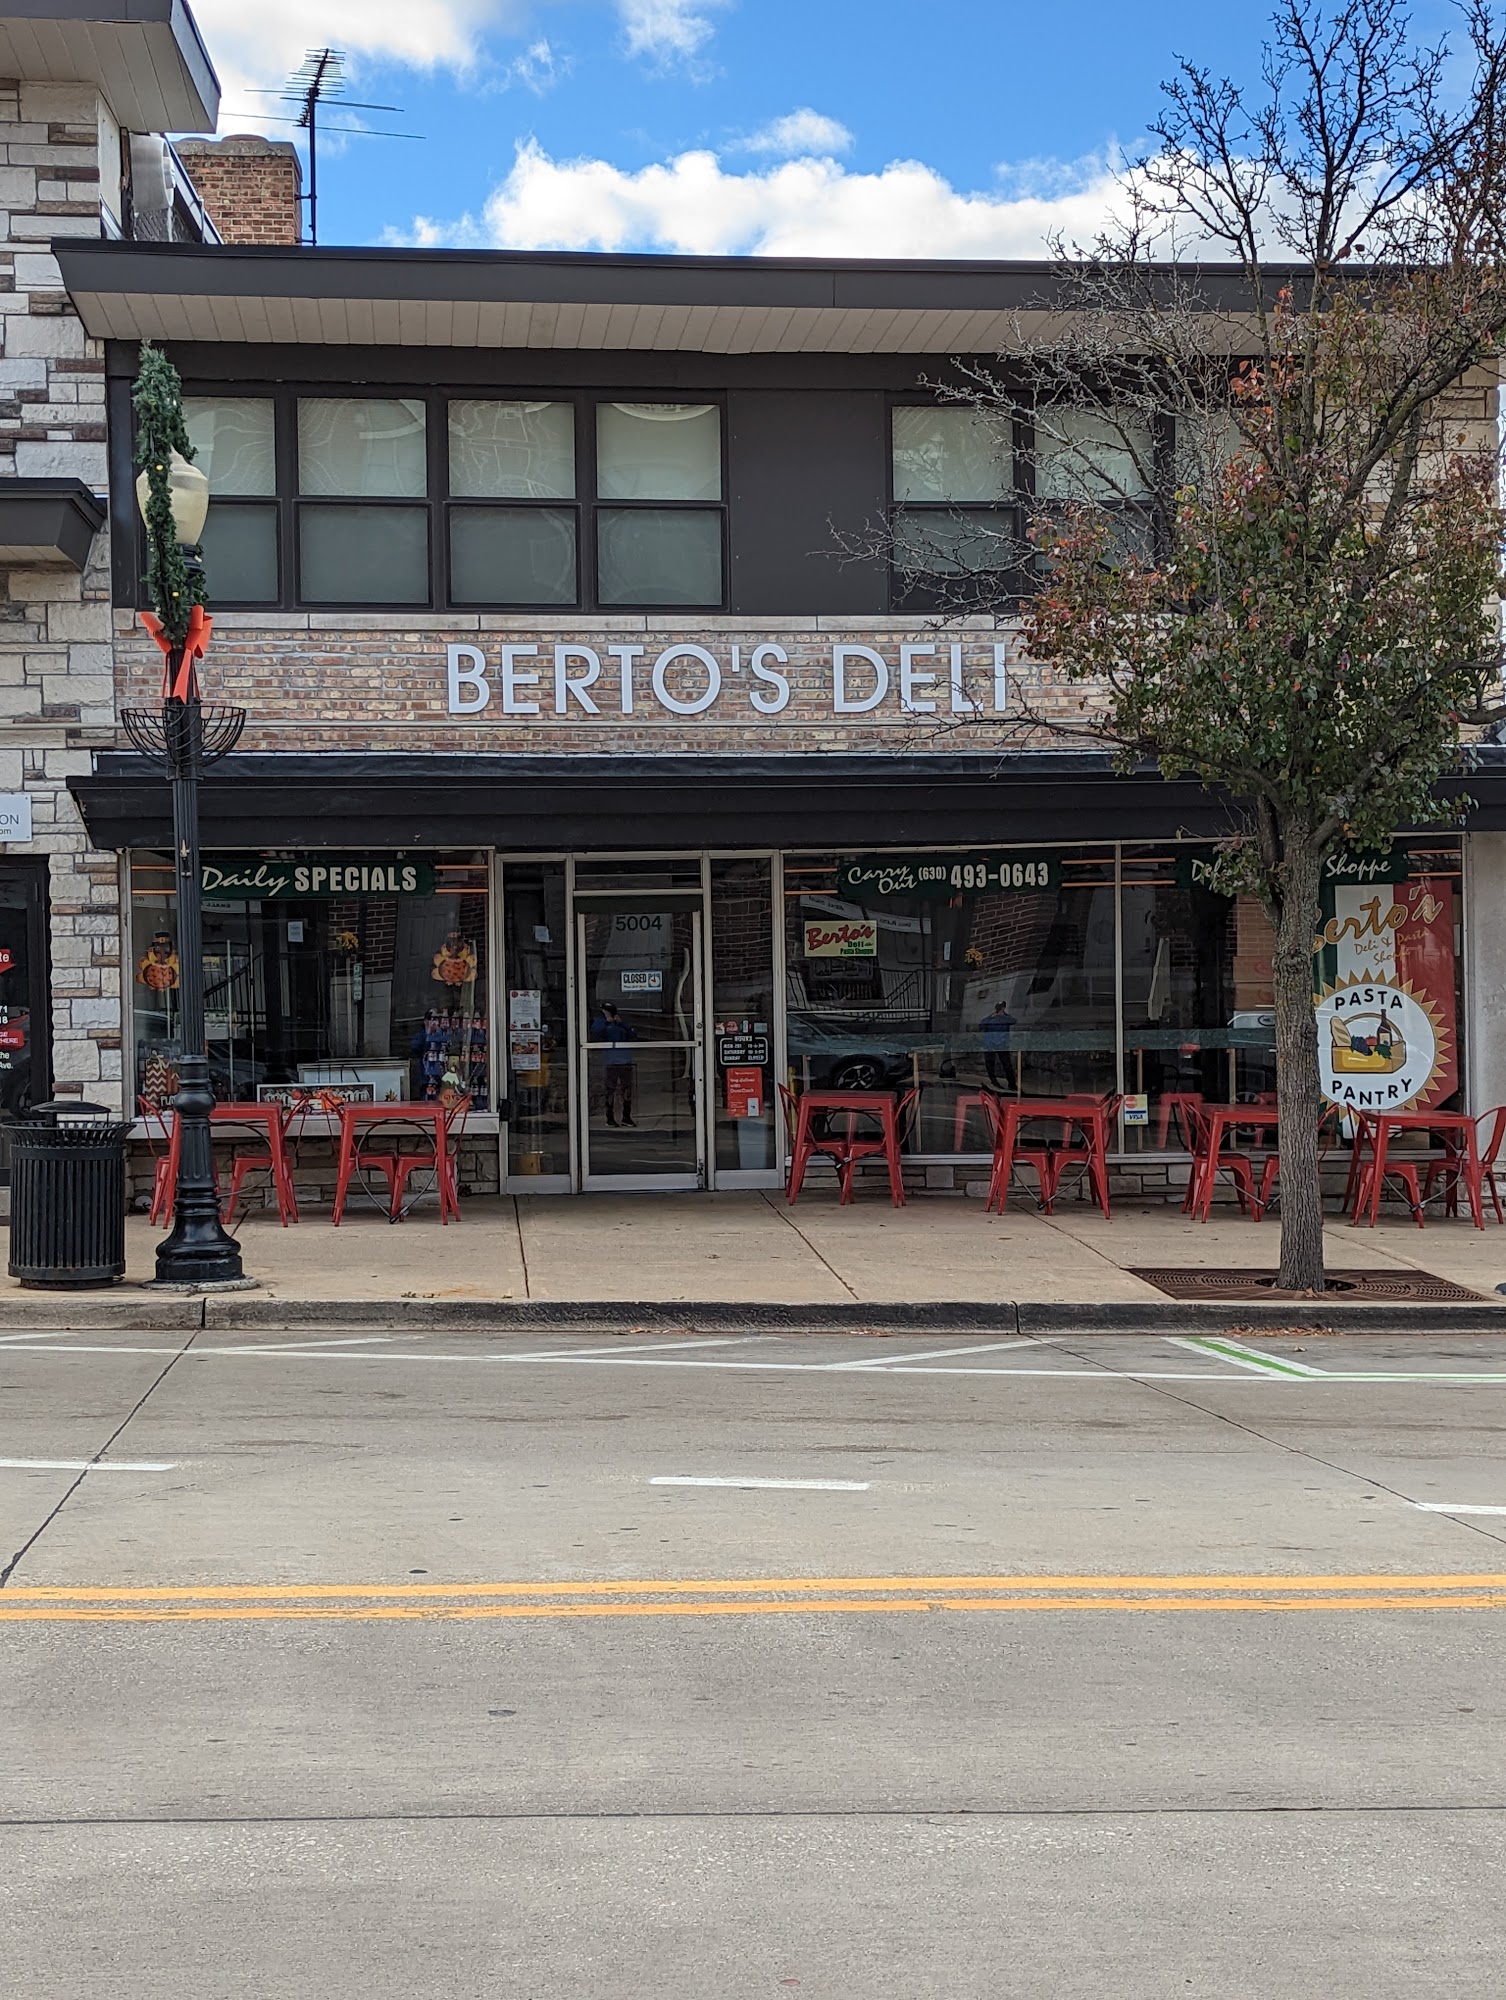 Berto's Deli & Pasta Shoppe